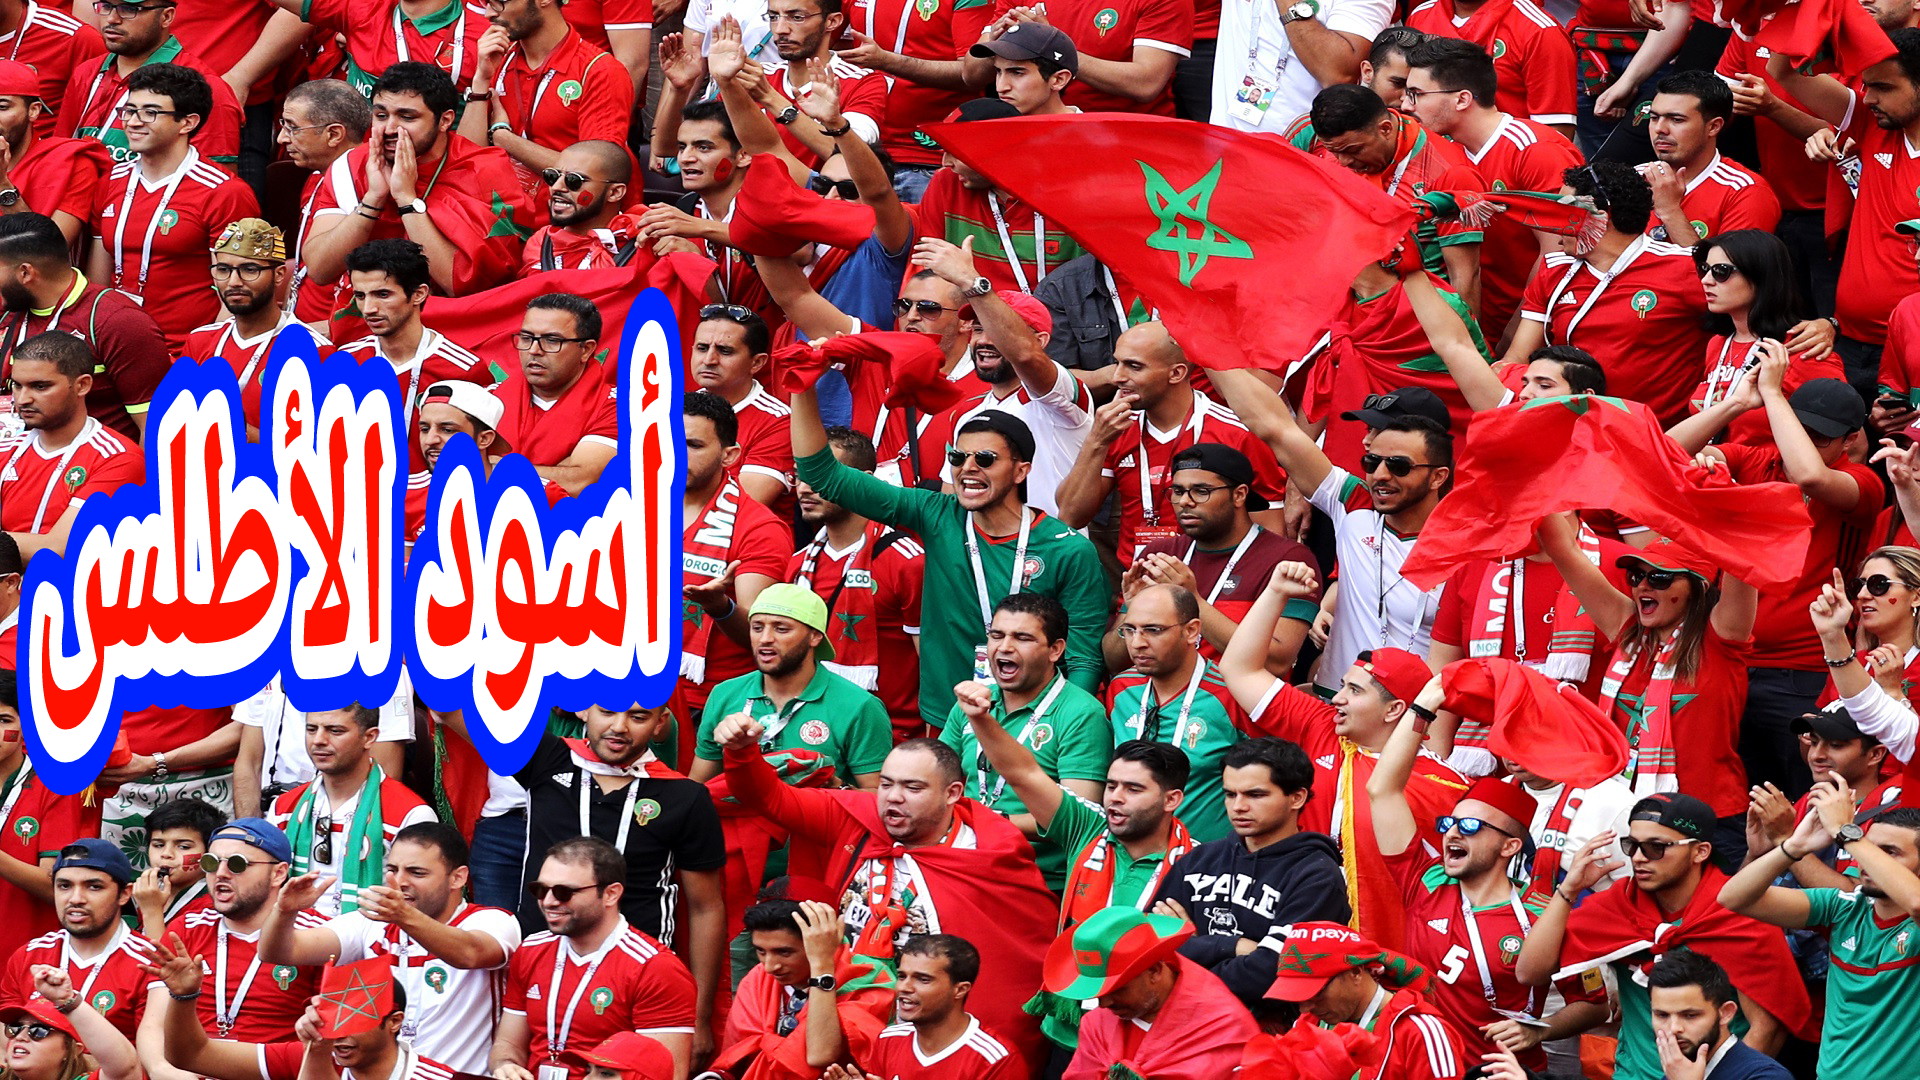 عاااجل الله اكبر وداروووها الرجال… المغرب يتأهل إلى نصف نهائي كأس العالم ويدخل التاااريخ مبرررووك علينا كاملين